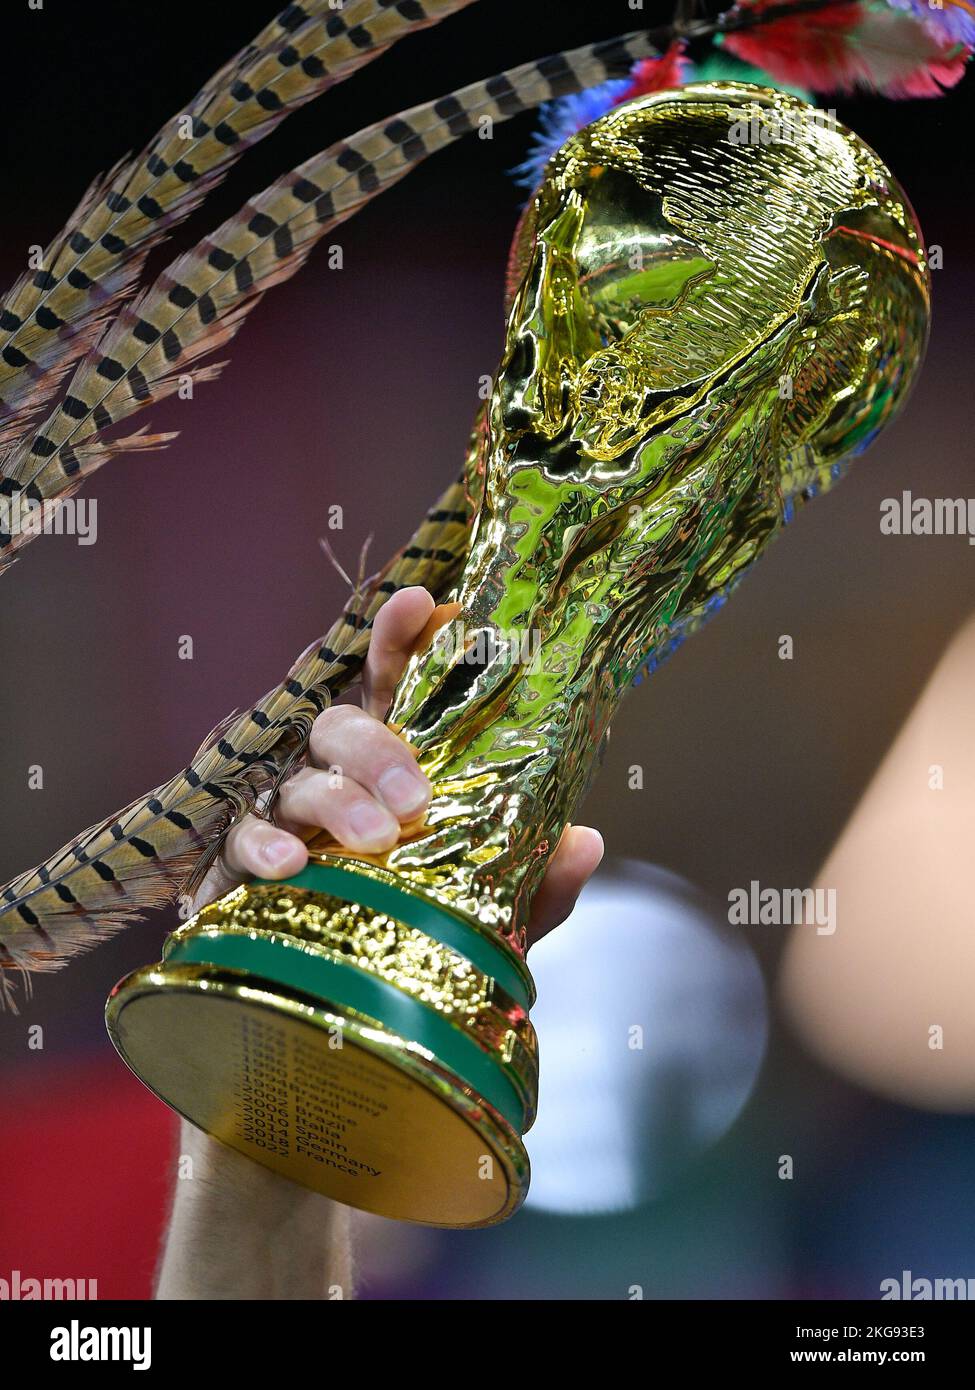 Estuche Louis Vuitton Copa FIFA Mundial 2014 02 - Marca de Gol